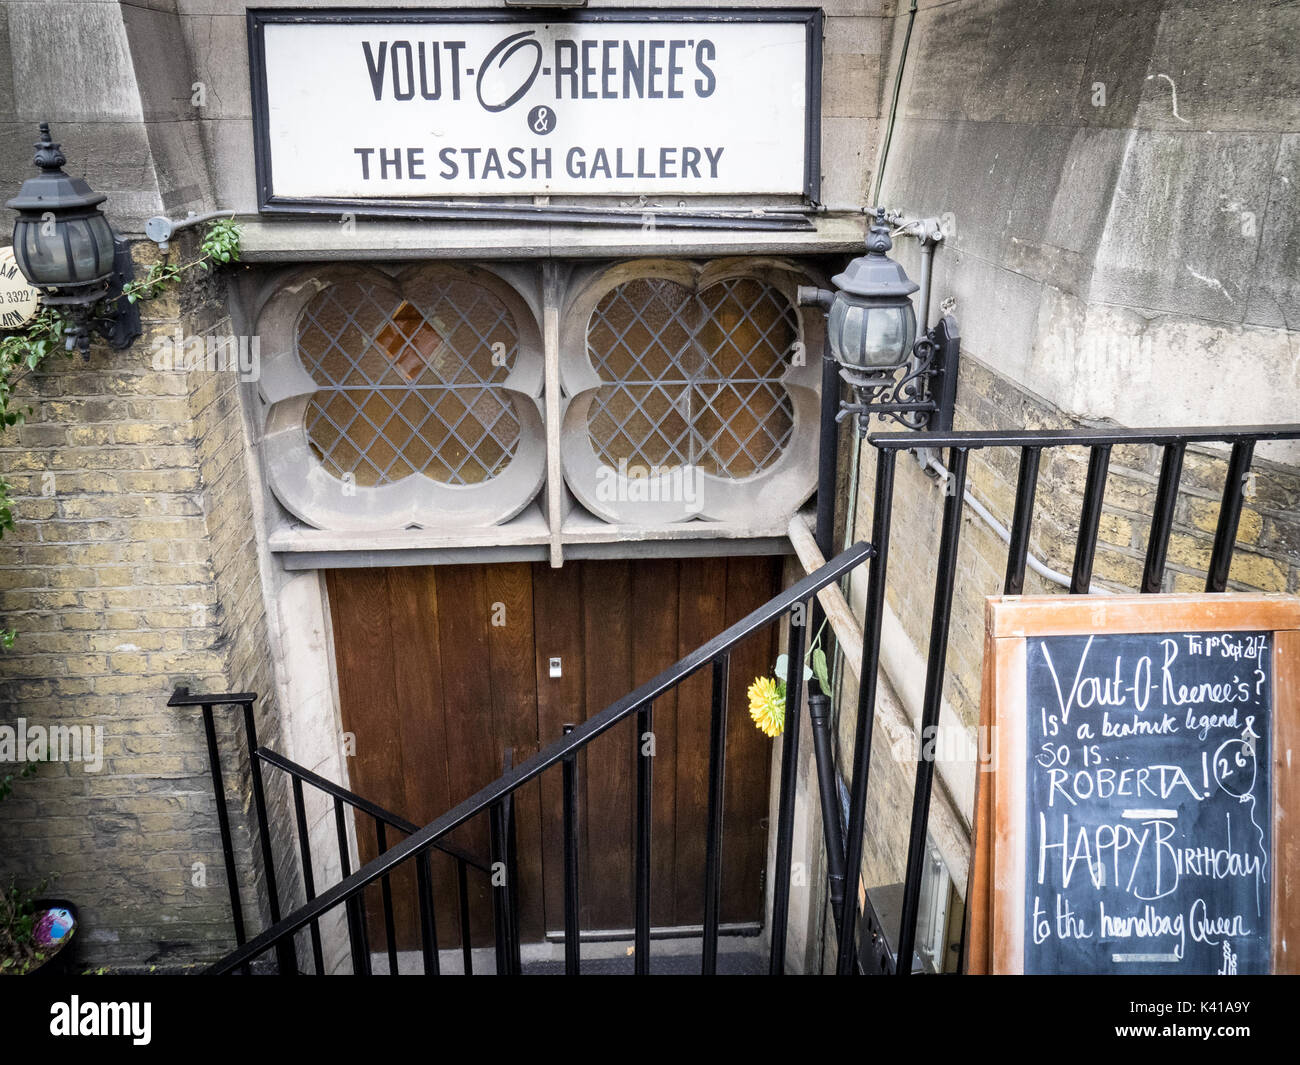 Vout-O-Reenee's - eine surrealistische private Mitglieder Verein und Galerie in der Krypta befindet, Prescott Street, East London. Stockfoto